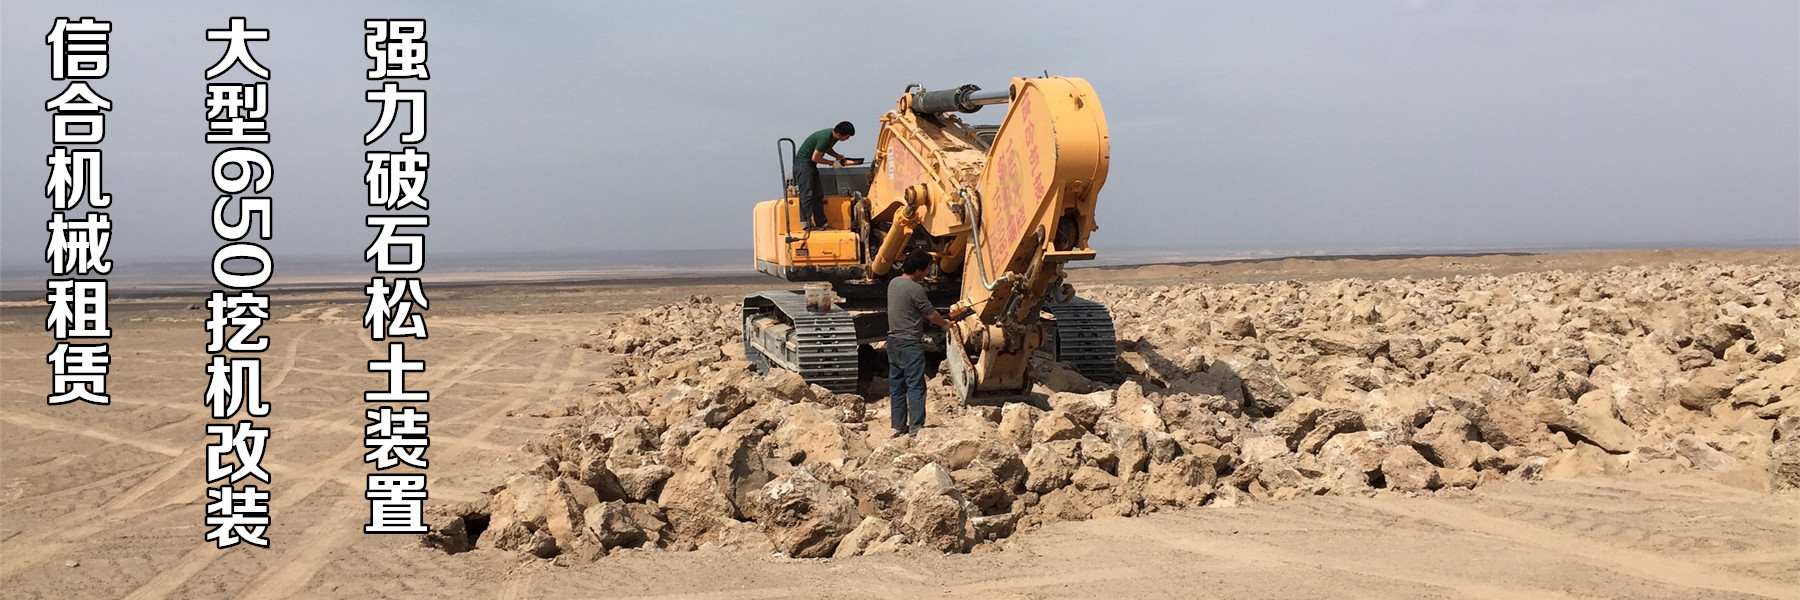 新疆矿山设备租赁中洗石机在冬季的保养十分重要